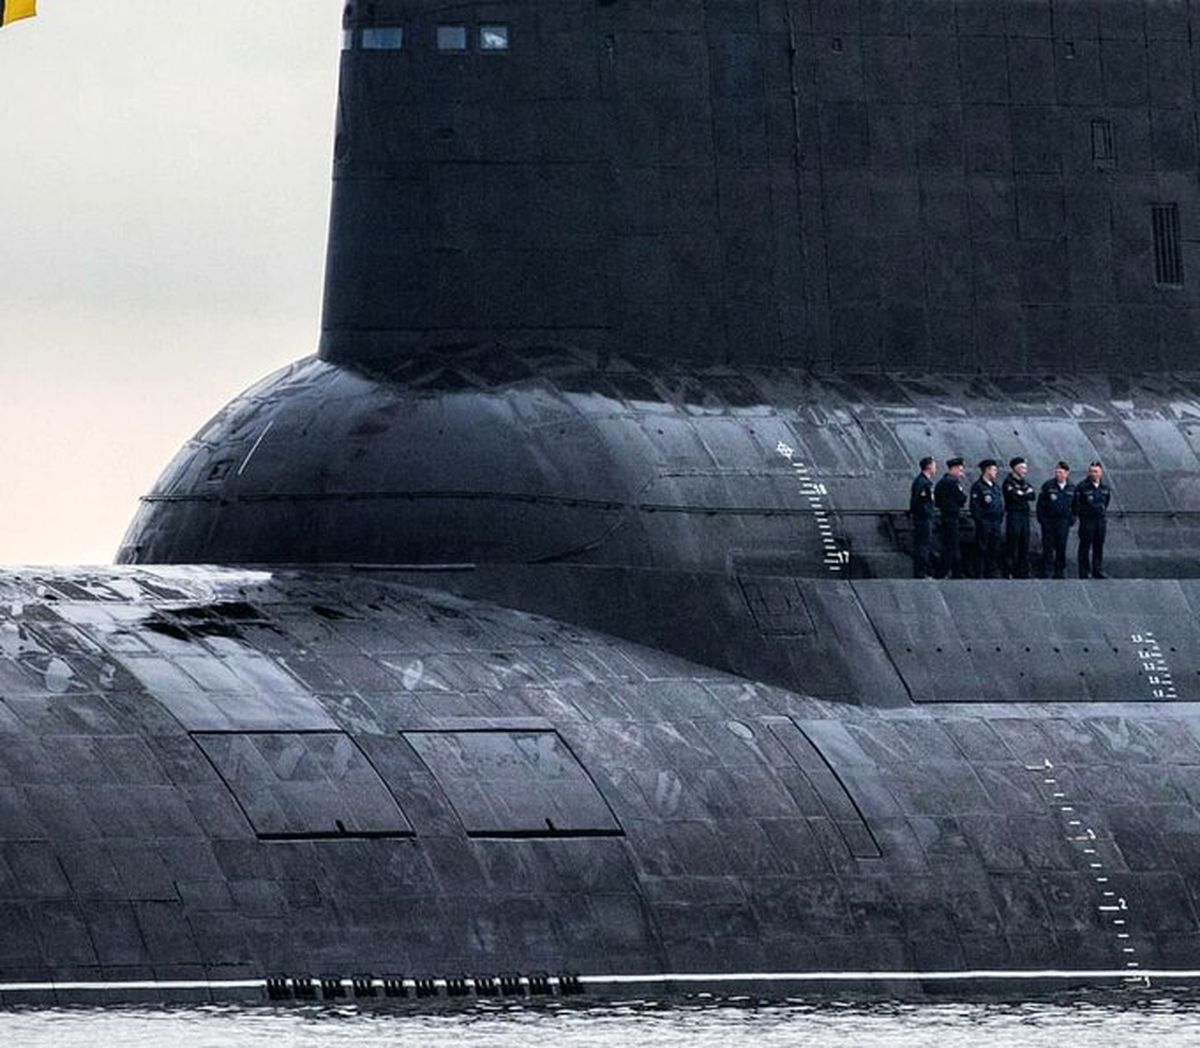 اندازه زیردریایی غول پیکر روسیه چقدر است؟+عکس